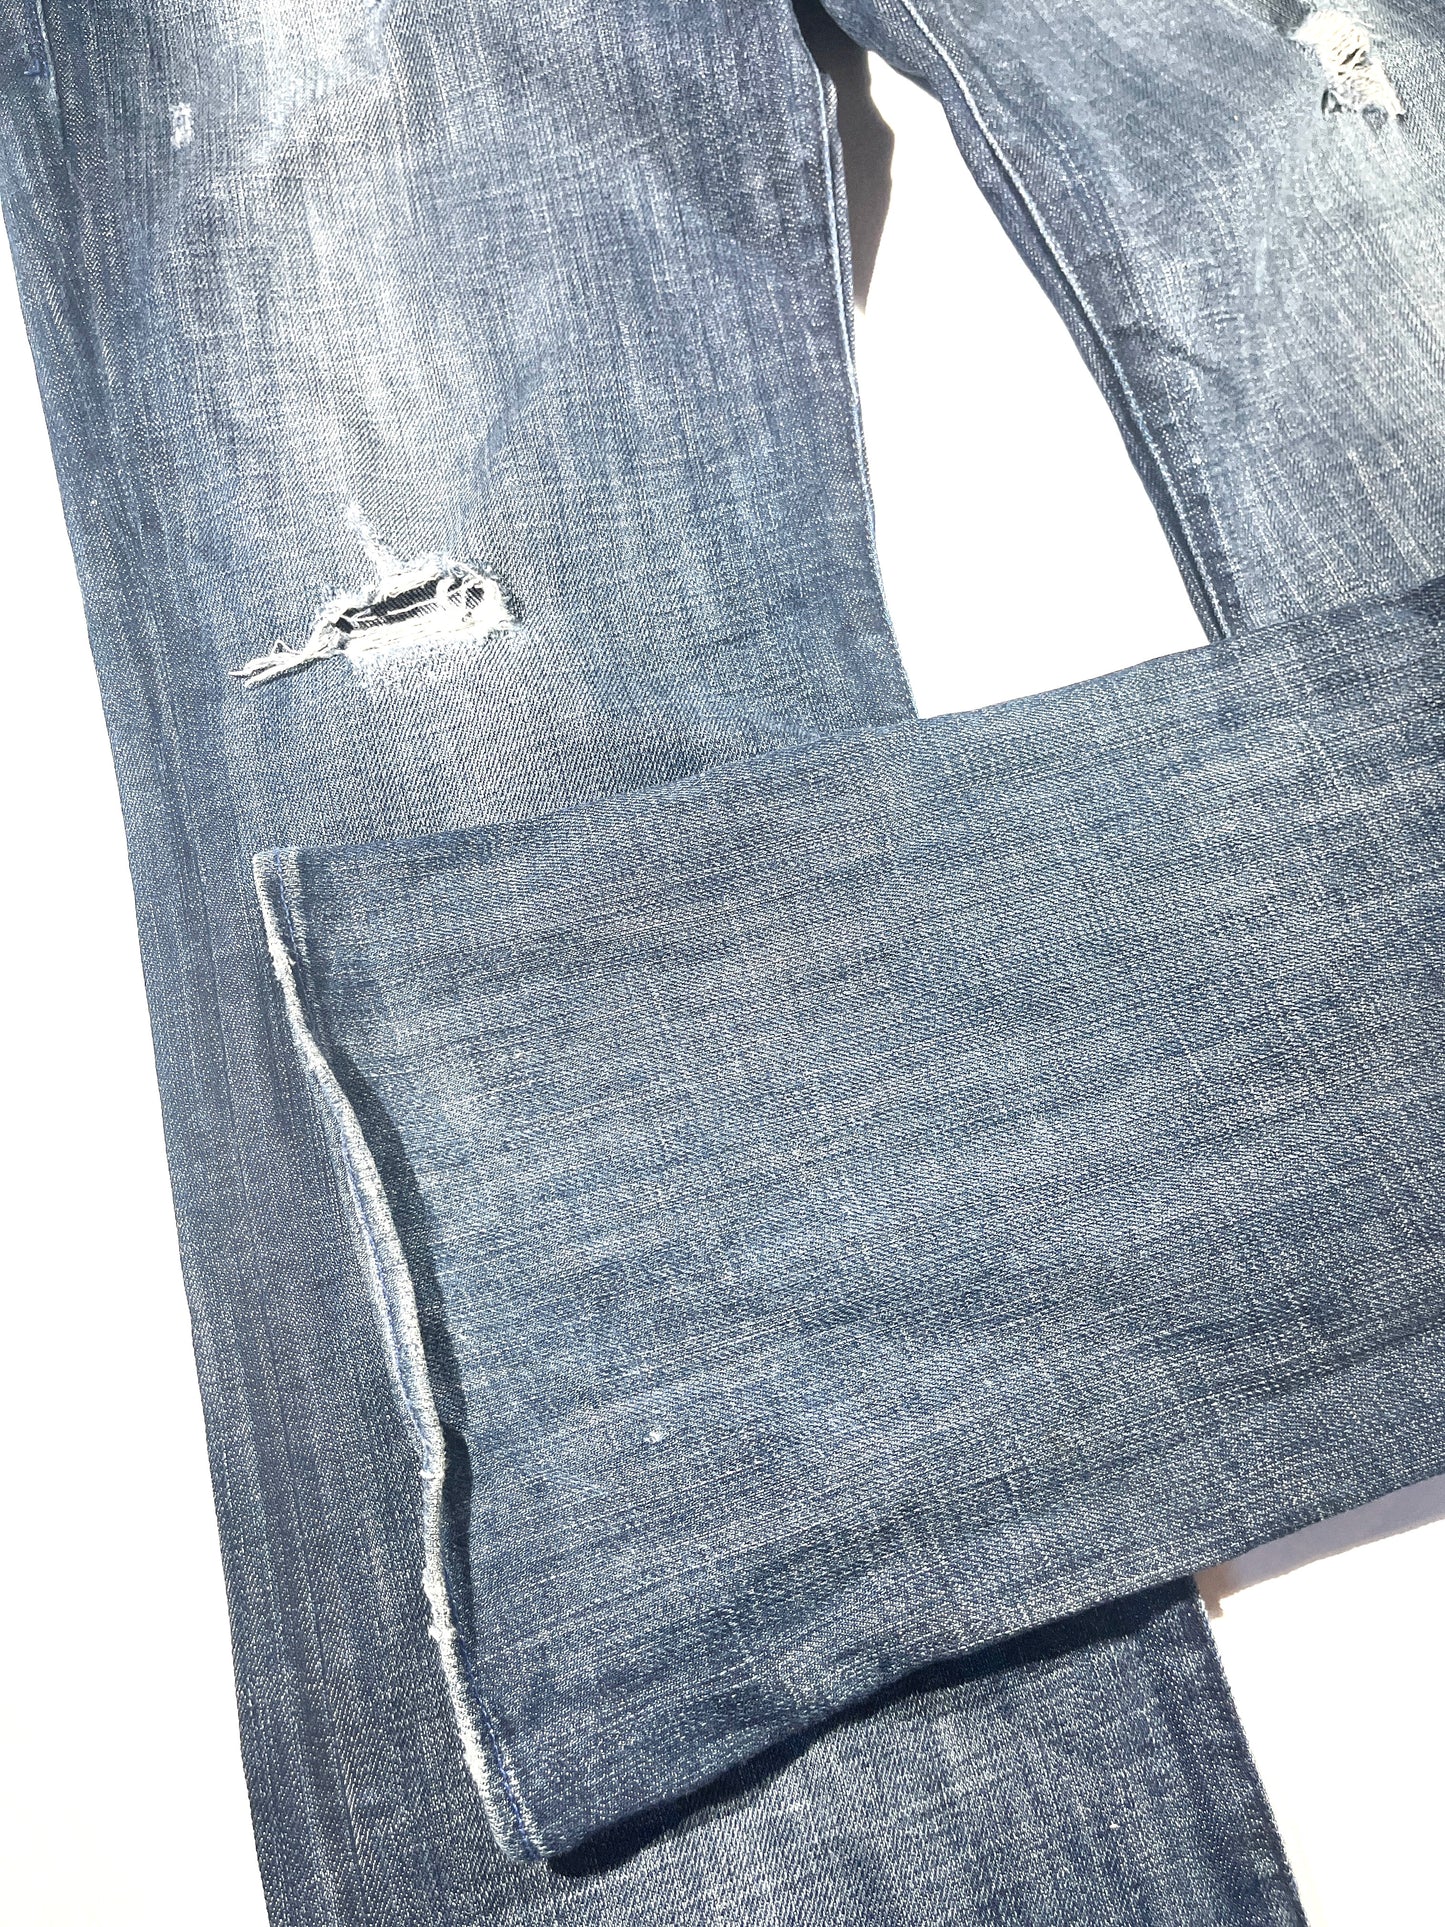 Vintage Rock & Republic Jeans Denim Pants Flare Fit